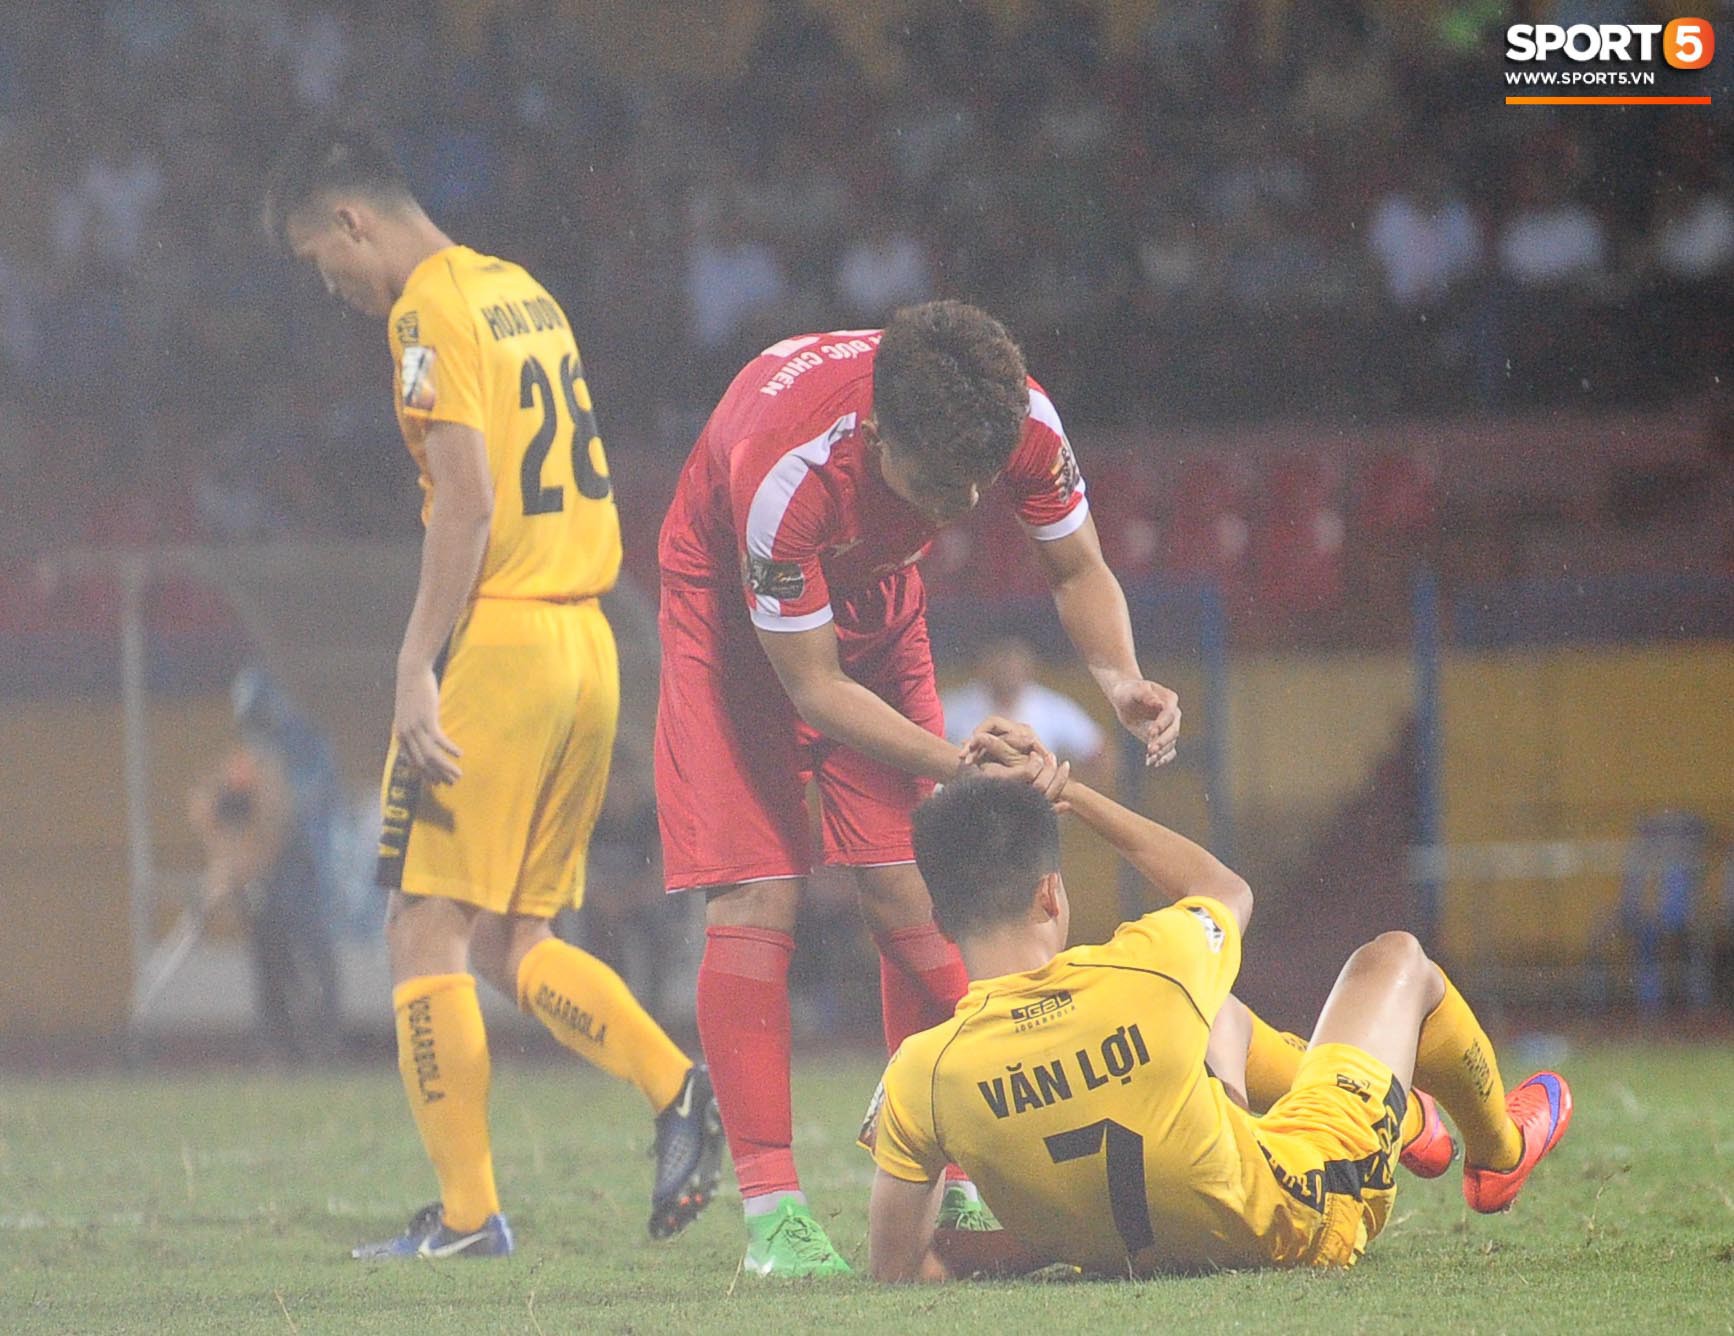 Thủ môn trẻ tài năng của U23 Việt Nam nhận lời cảnh báo sau trận thuỷ chiến trên sân Hàng Đẫy - Ảnh 10.